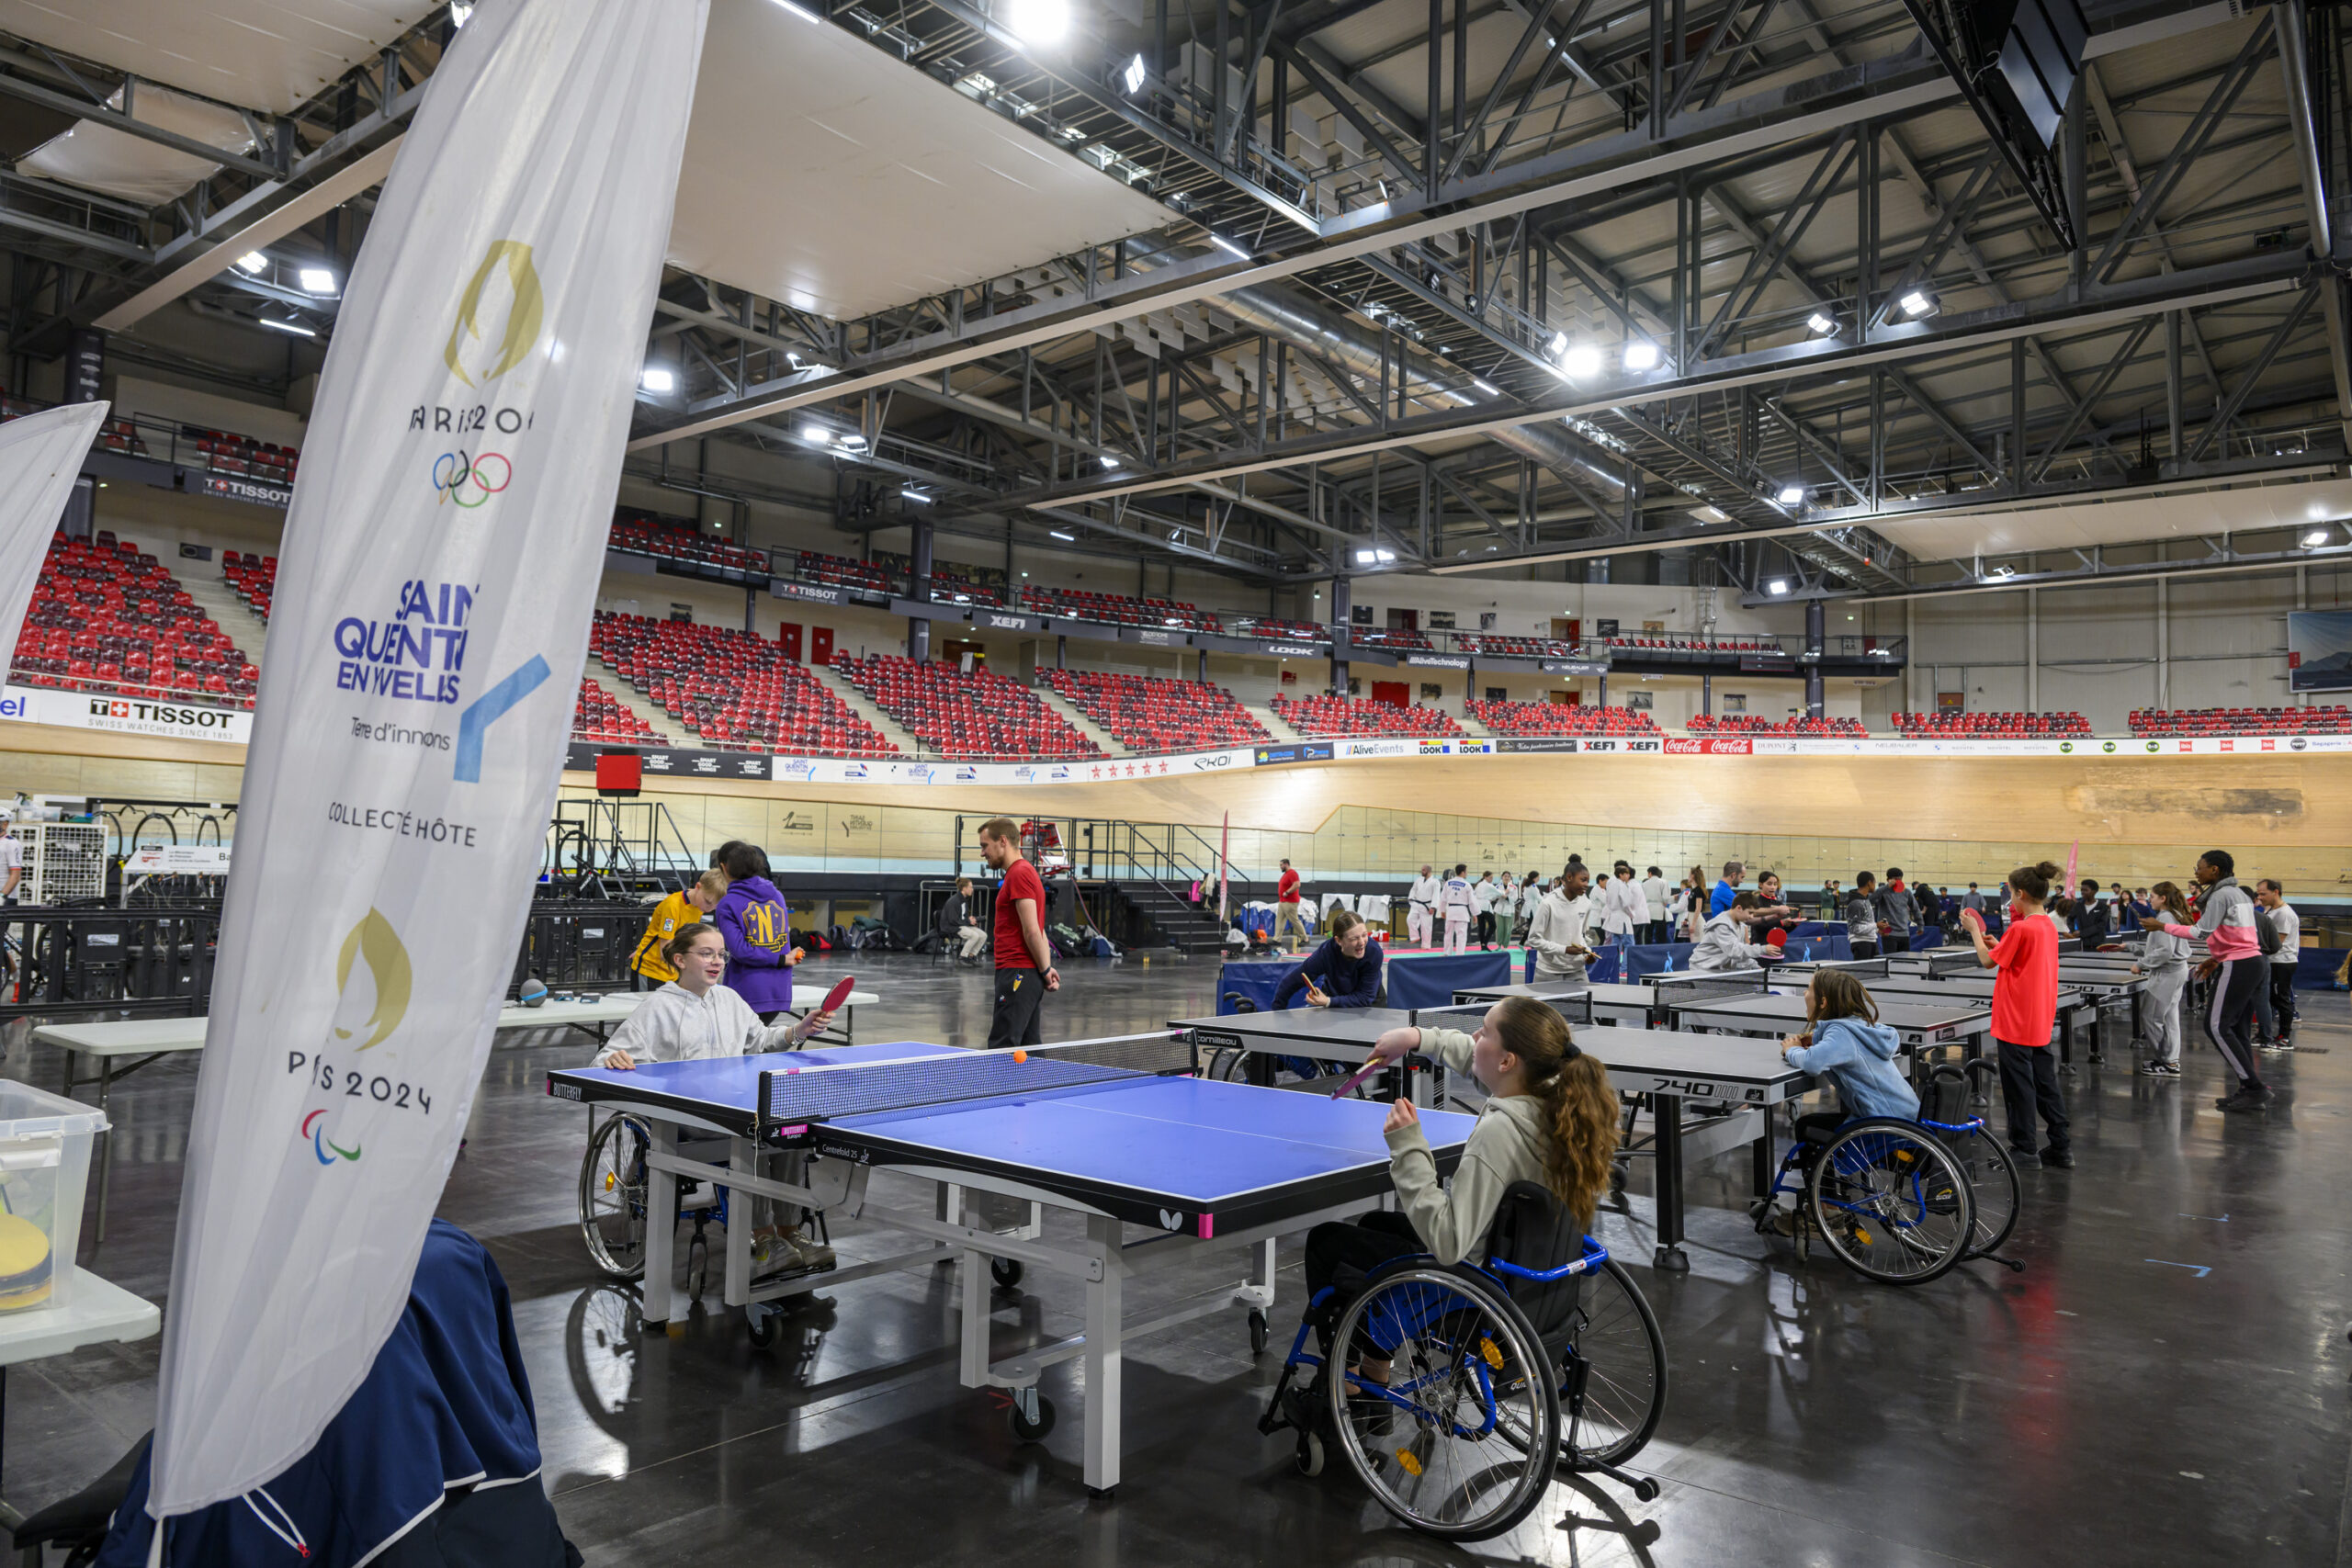 SOP - Semaine Olympique et Paralympique Paris 2024